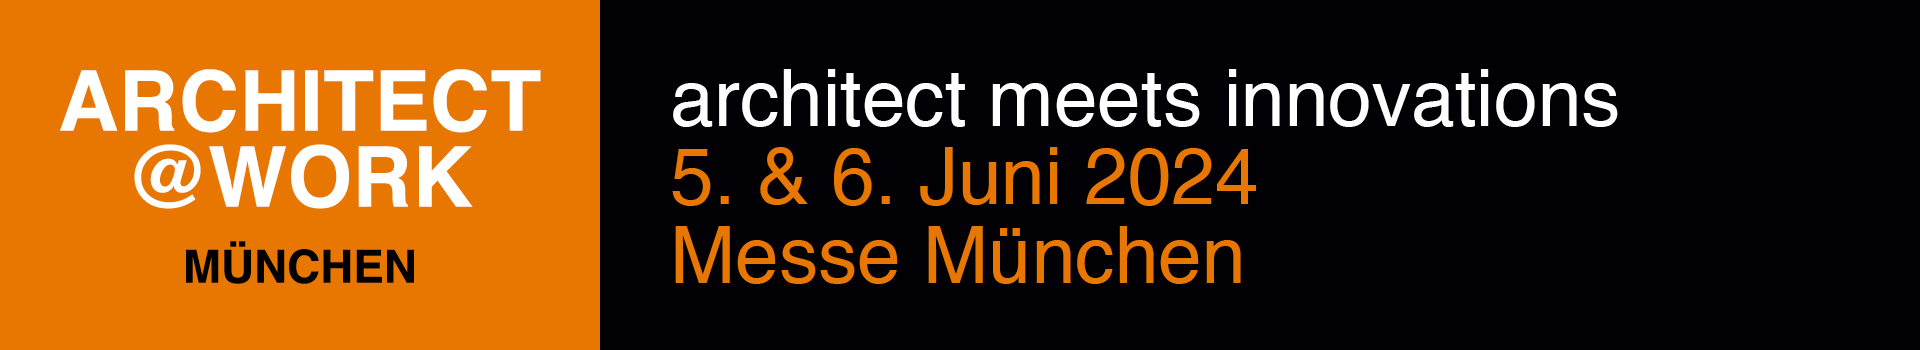 Architektur-Messe Architect@work in München am 5. und 6. Juni 2024.